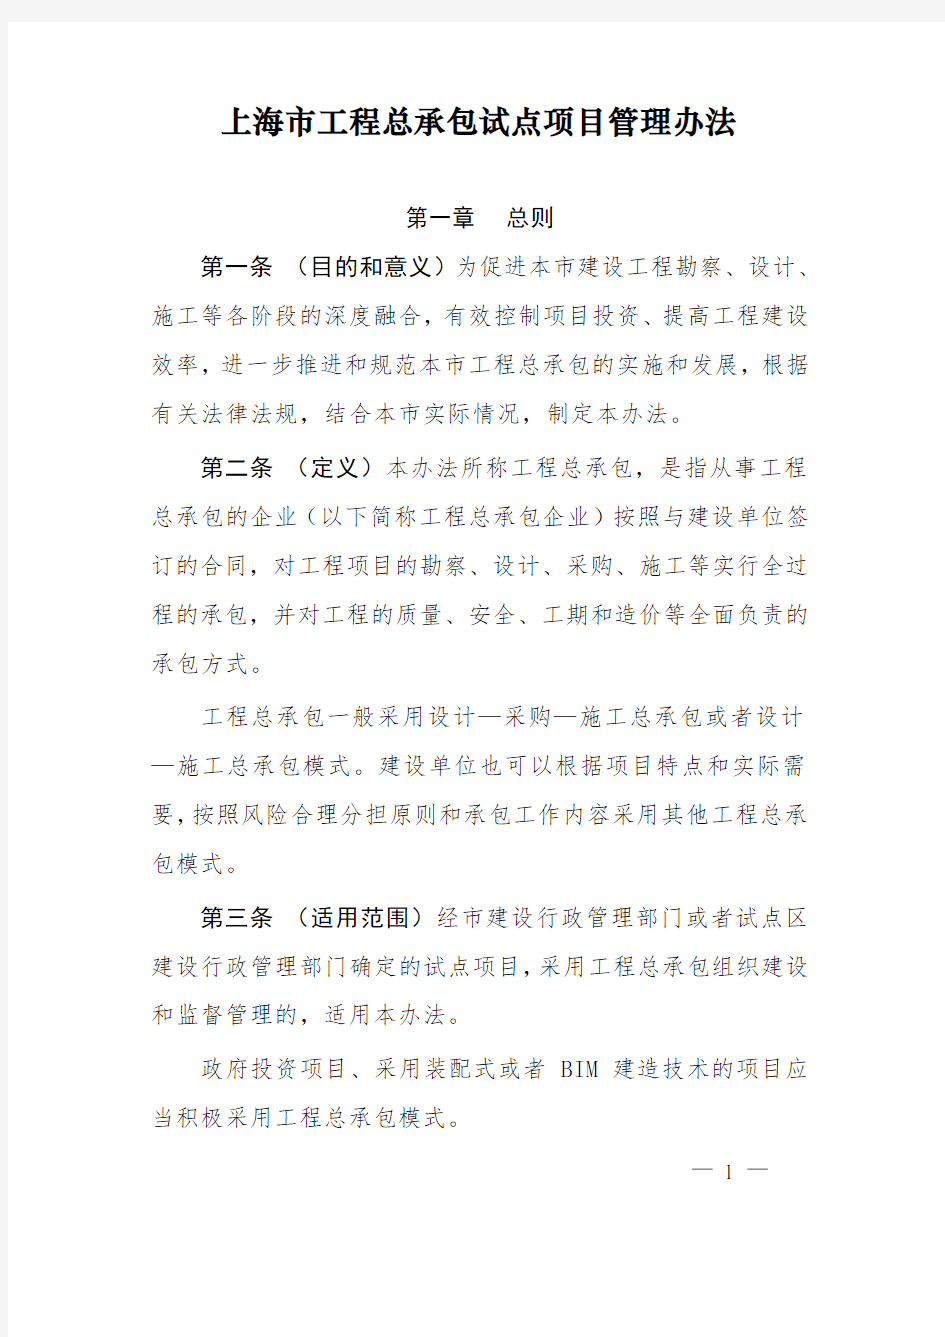 上海市工程总承包试点项目管理办法沪建建管〔2016〕1151号